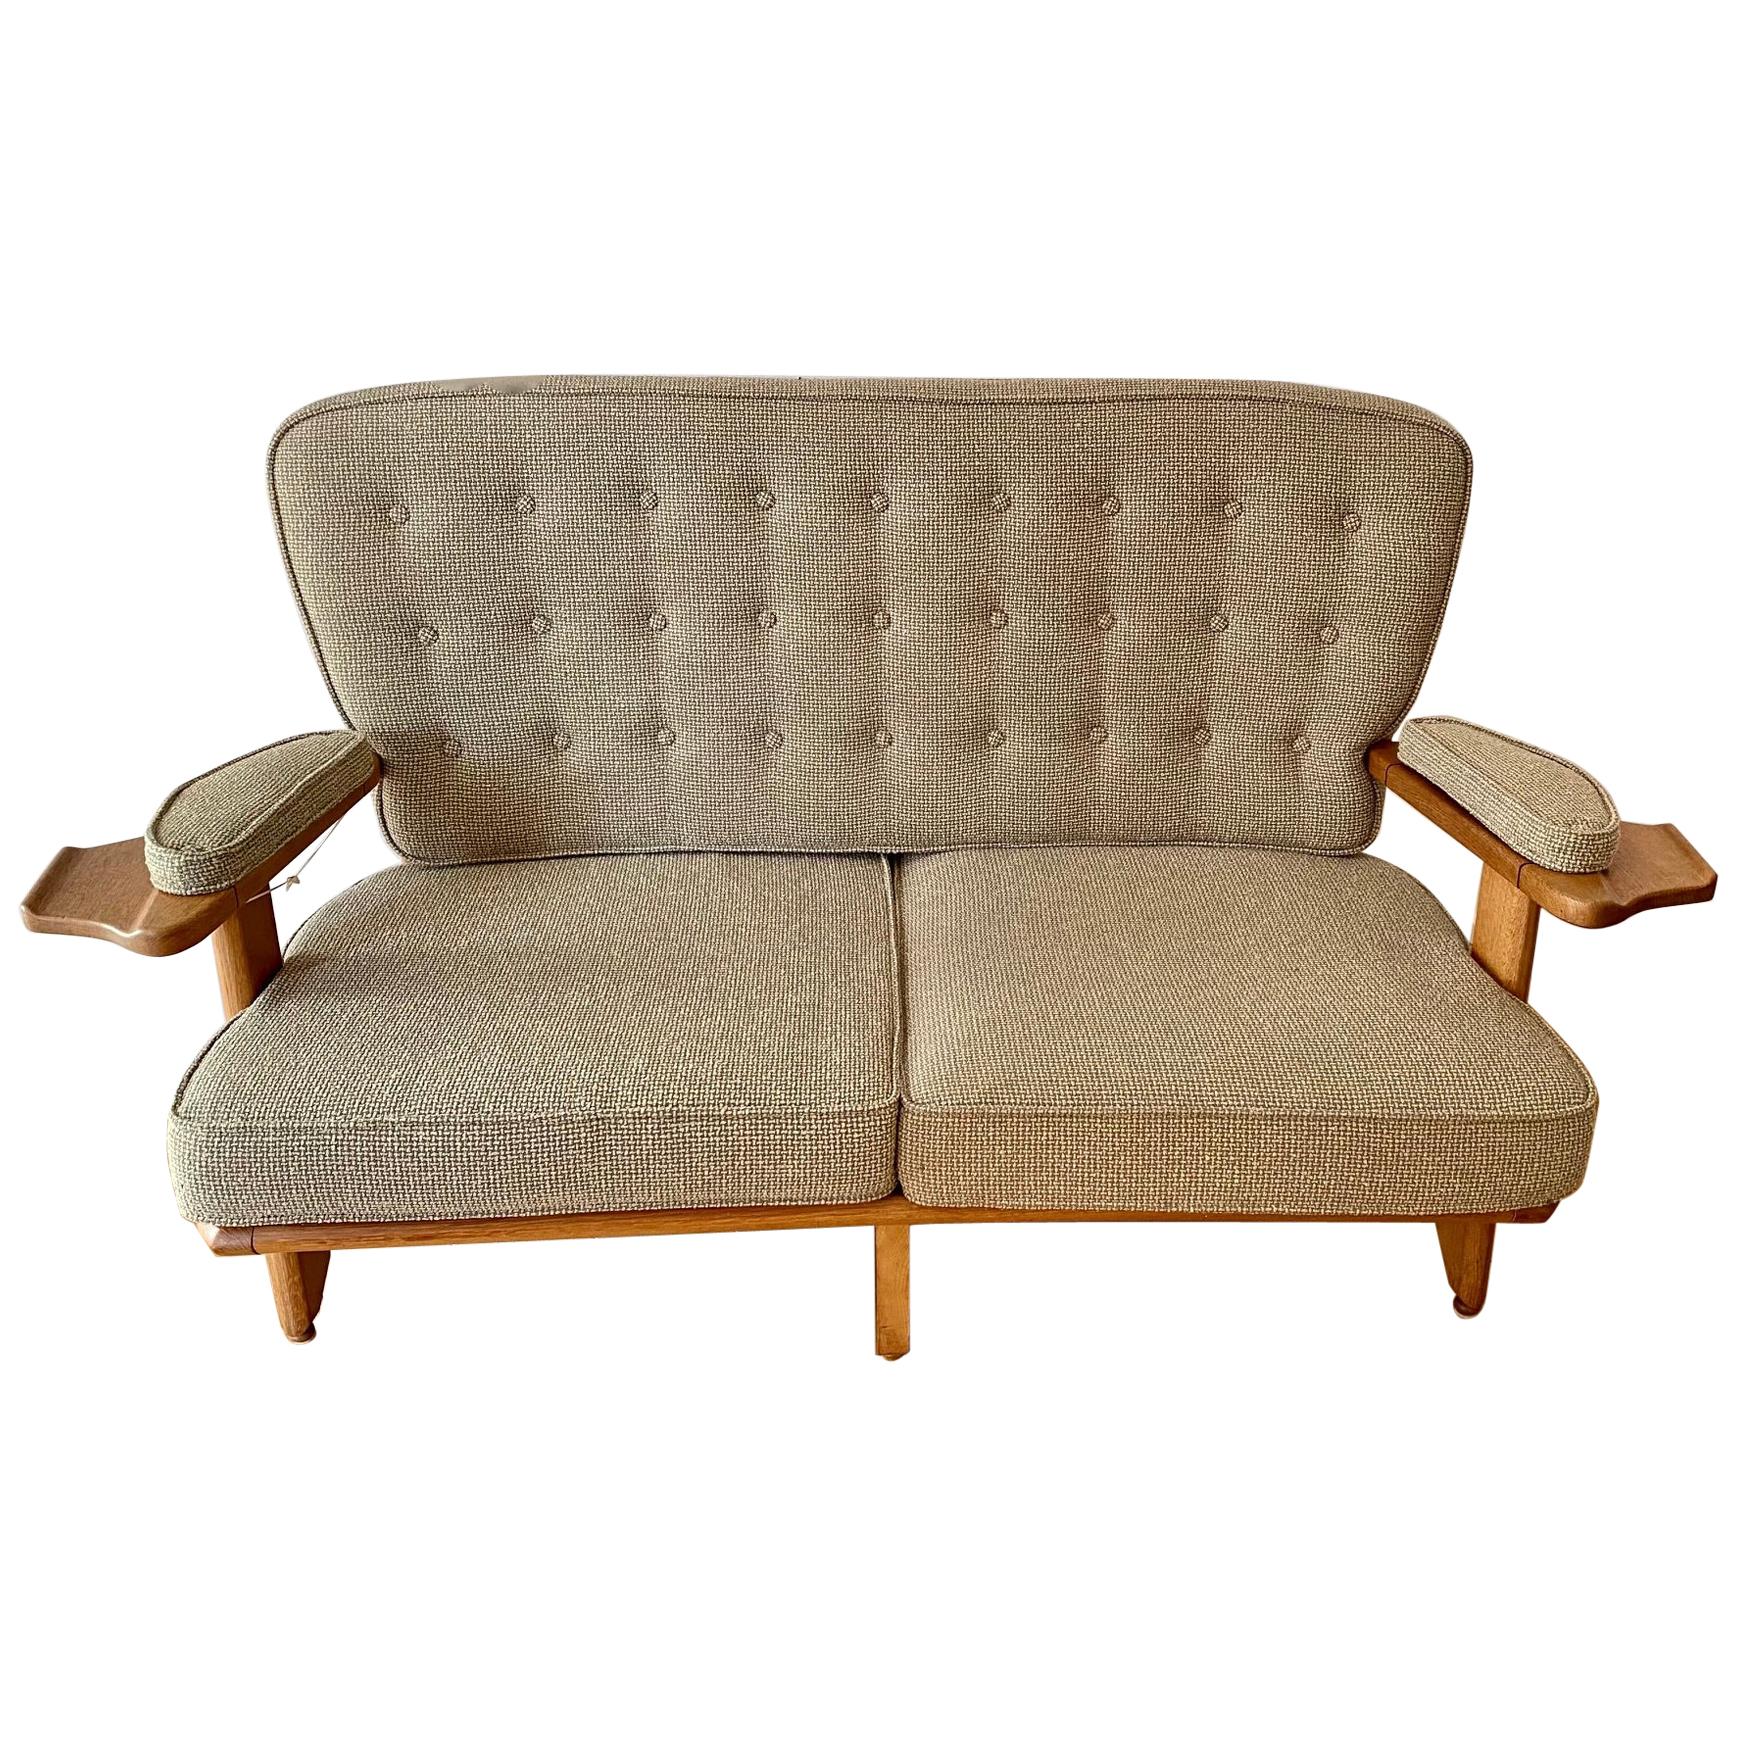 Sofa aus Eiche von den französischen Designern Guillerme et Chambron, 1960er Jahre